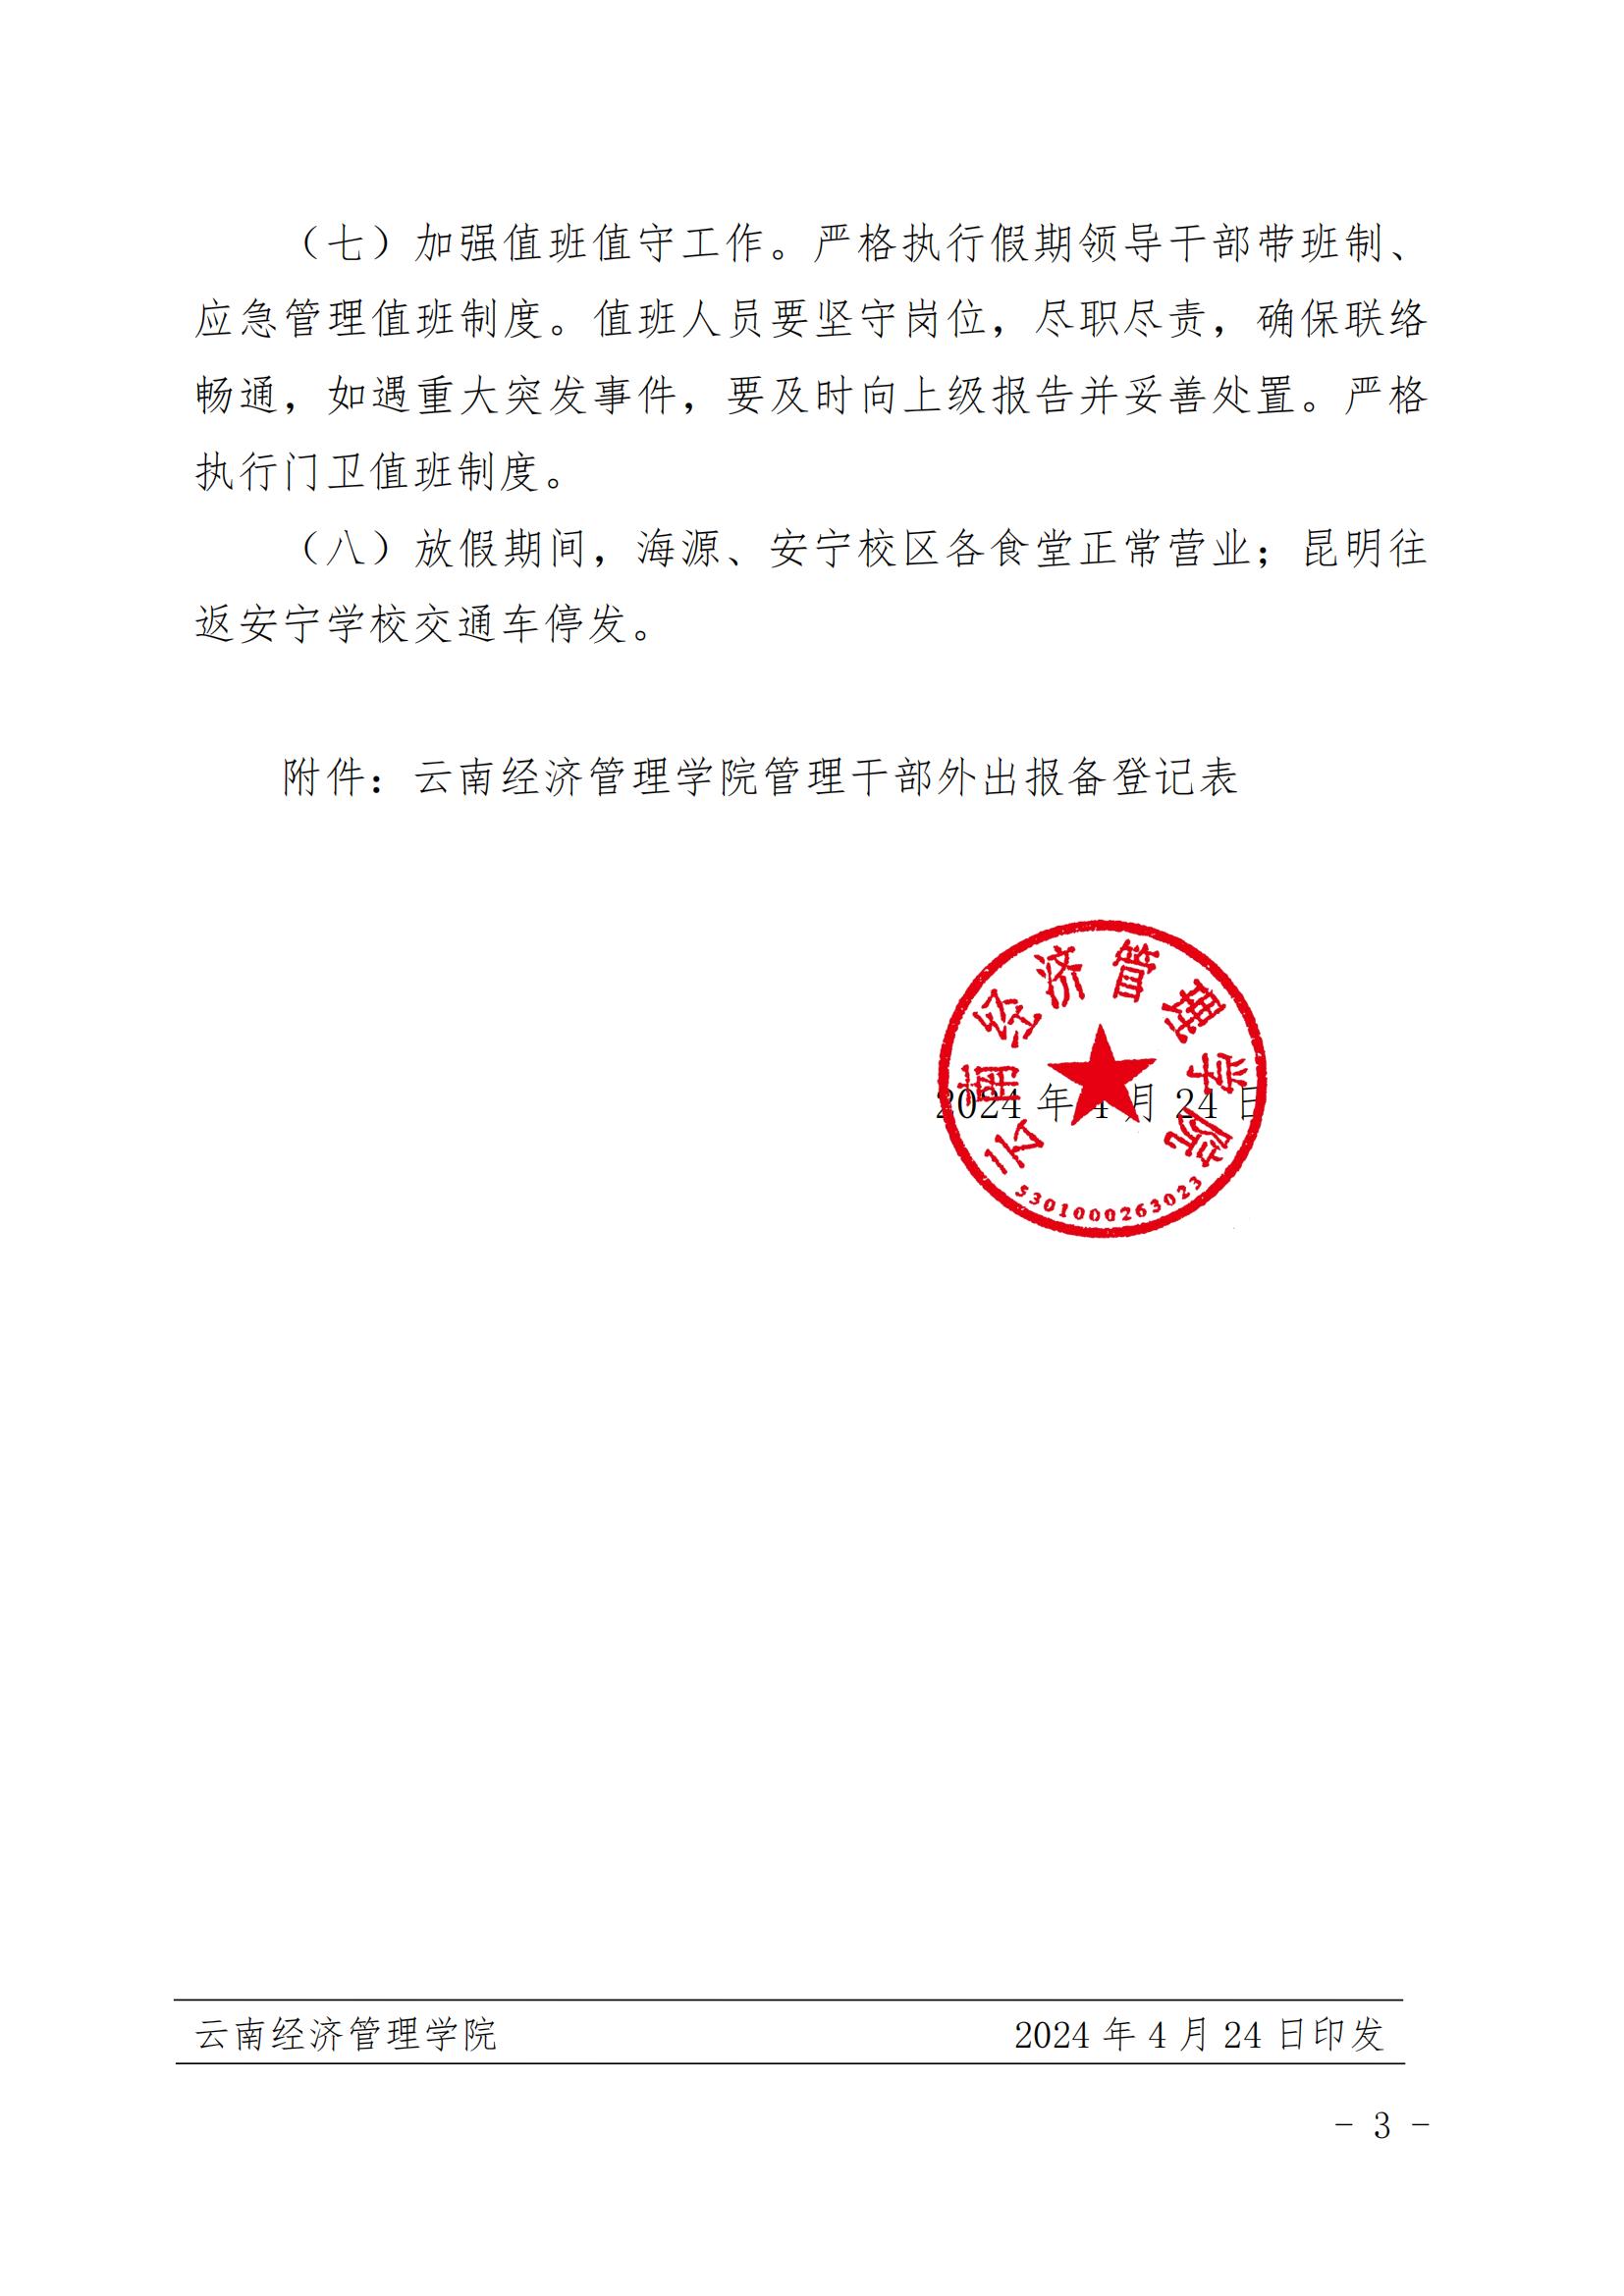 云南经济管理学院关于2024年五一劳动节放假安排的通知 第 3 张